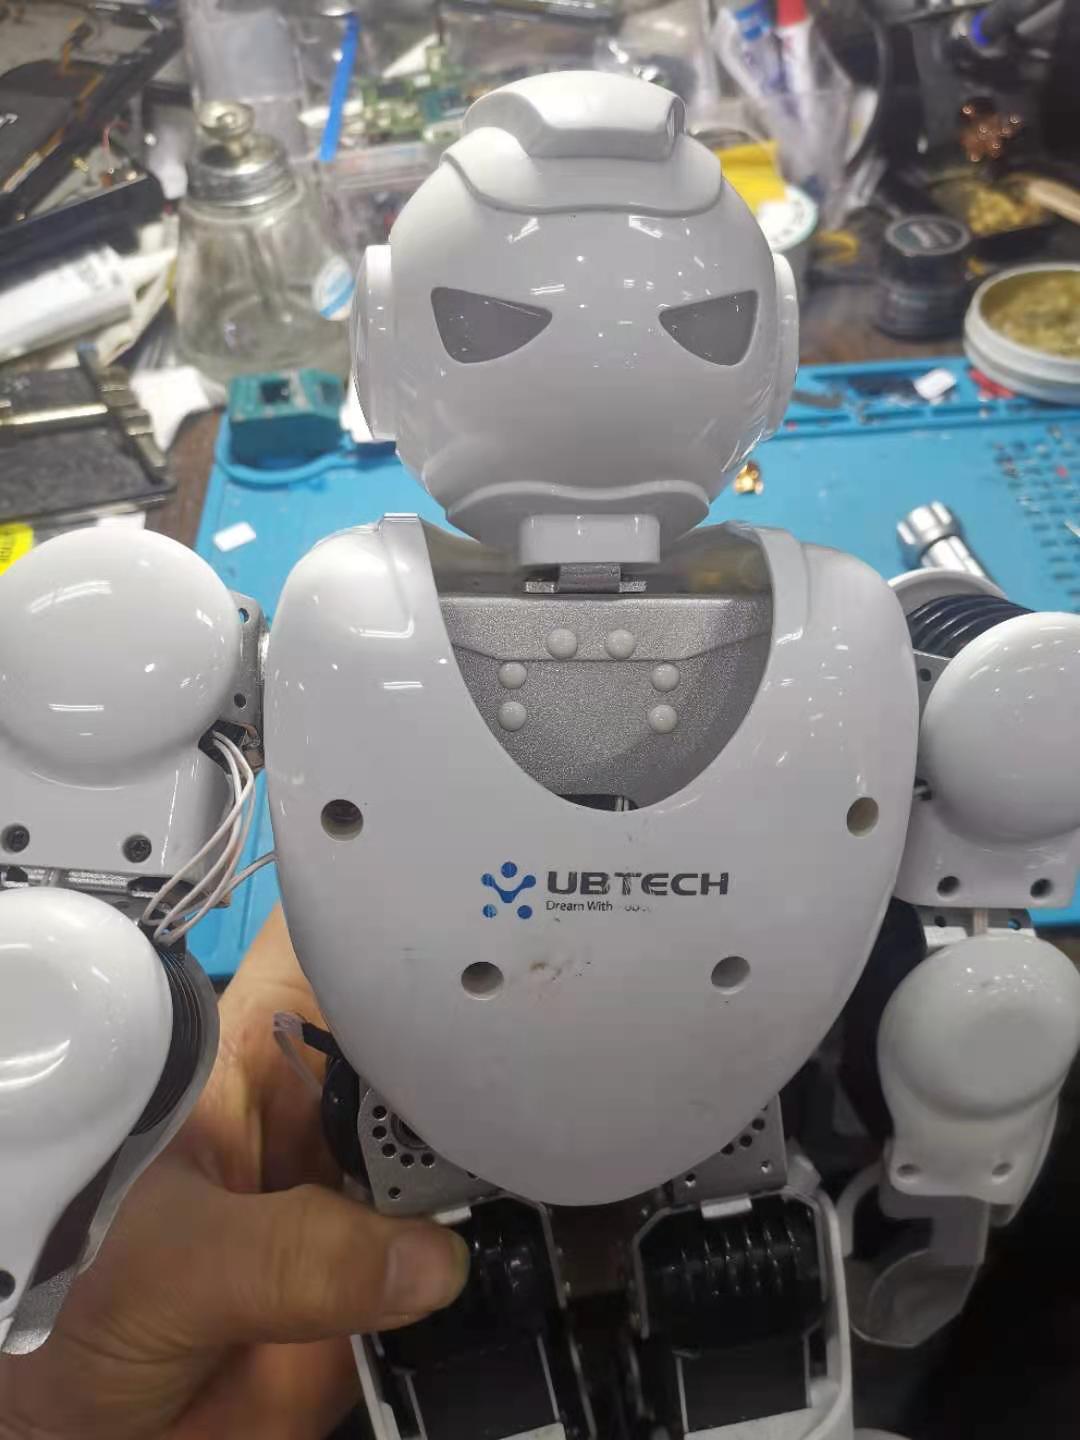 UBTECH 阿尔法1S 超级好玩的家用机器人，给你的孩子一个好伙伴！ - 普象网